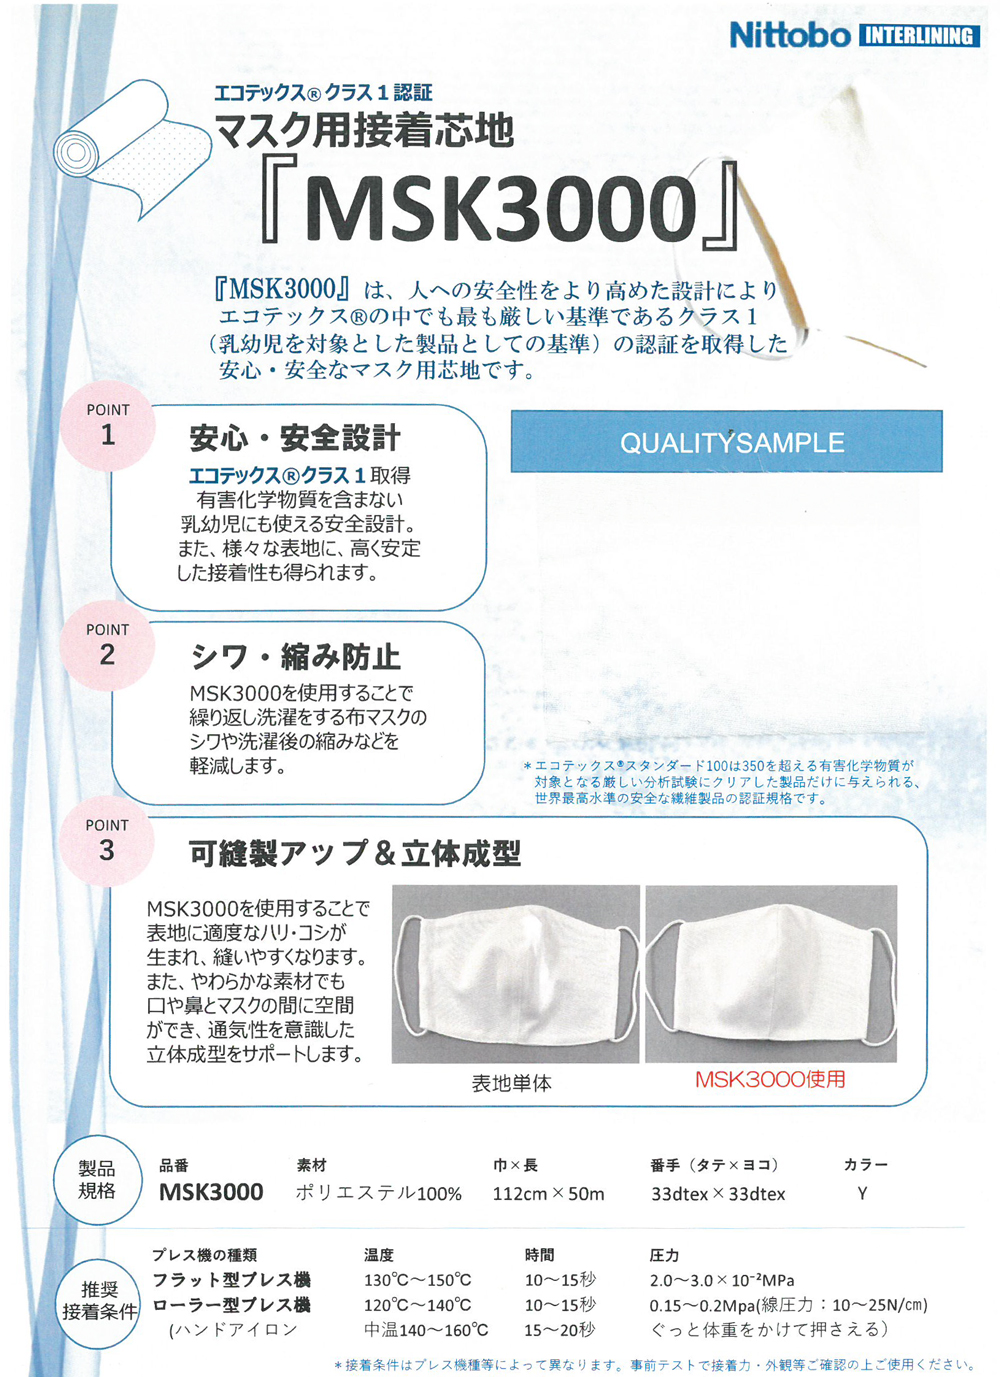 MSK3000 Ecotex® Standard 100 Zertifizierte Schmelzbare Einlage Für Masken Nittobo